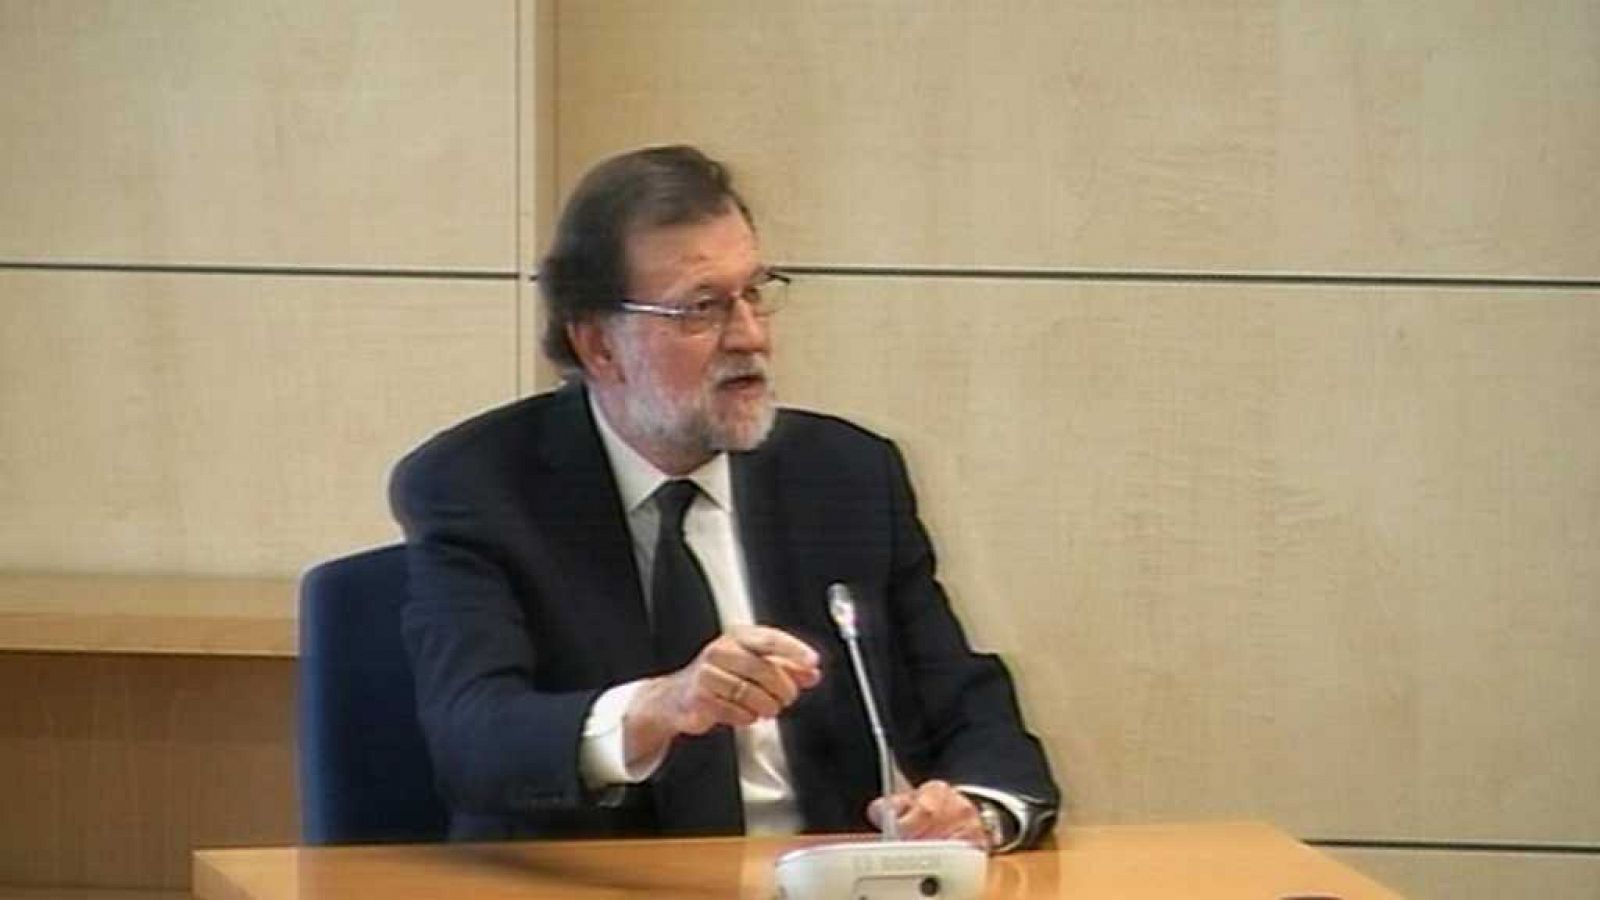 Especiales informativos - Declaración de Mariano Rajoy en la Audiencia Nacional